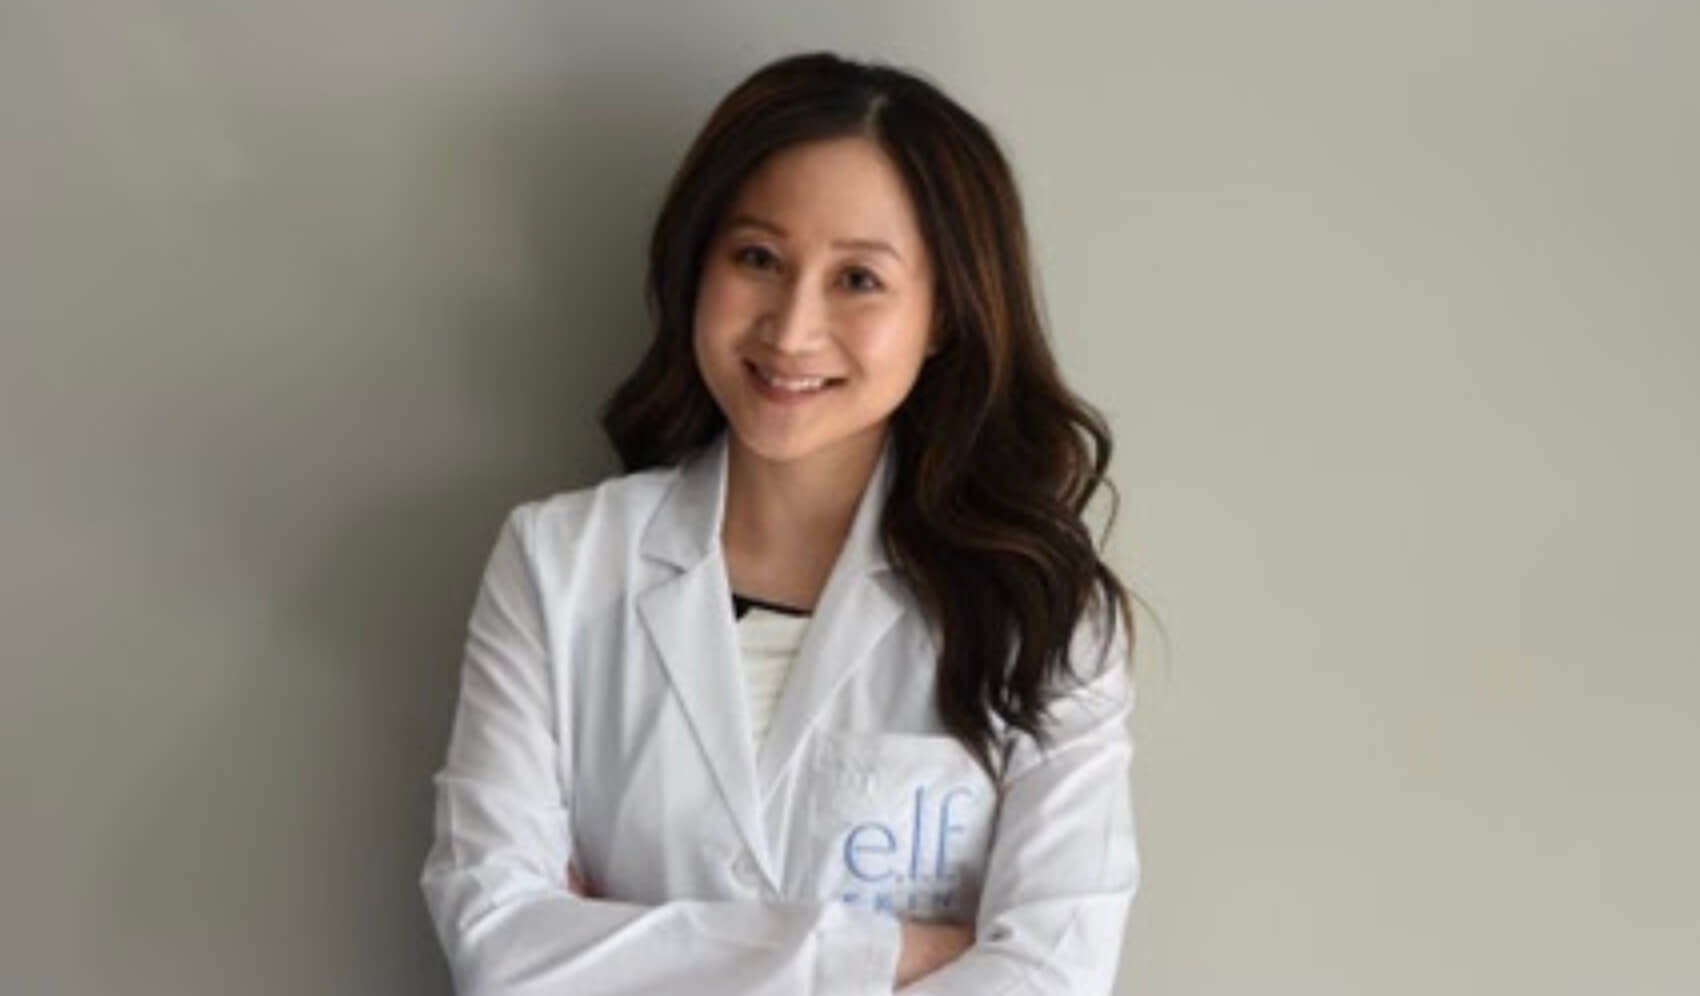 Dr. Jenny Liu smiling